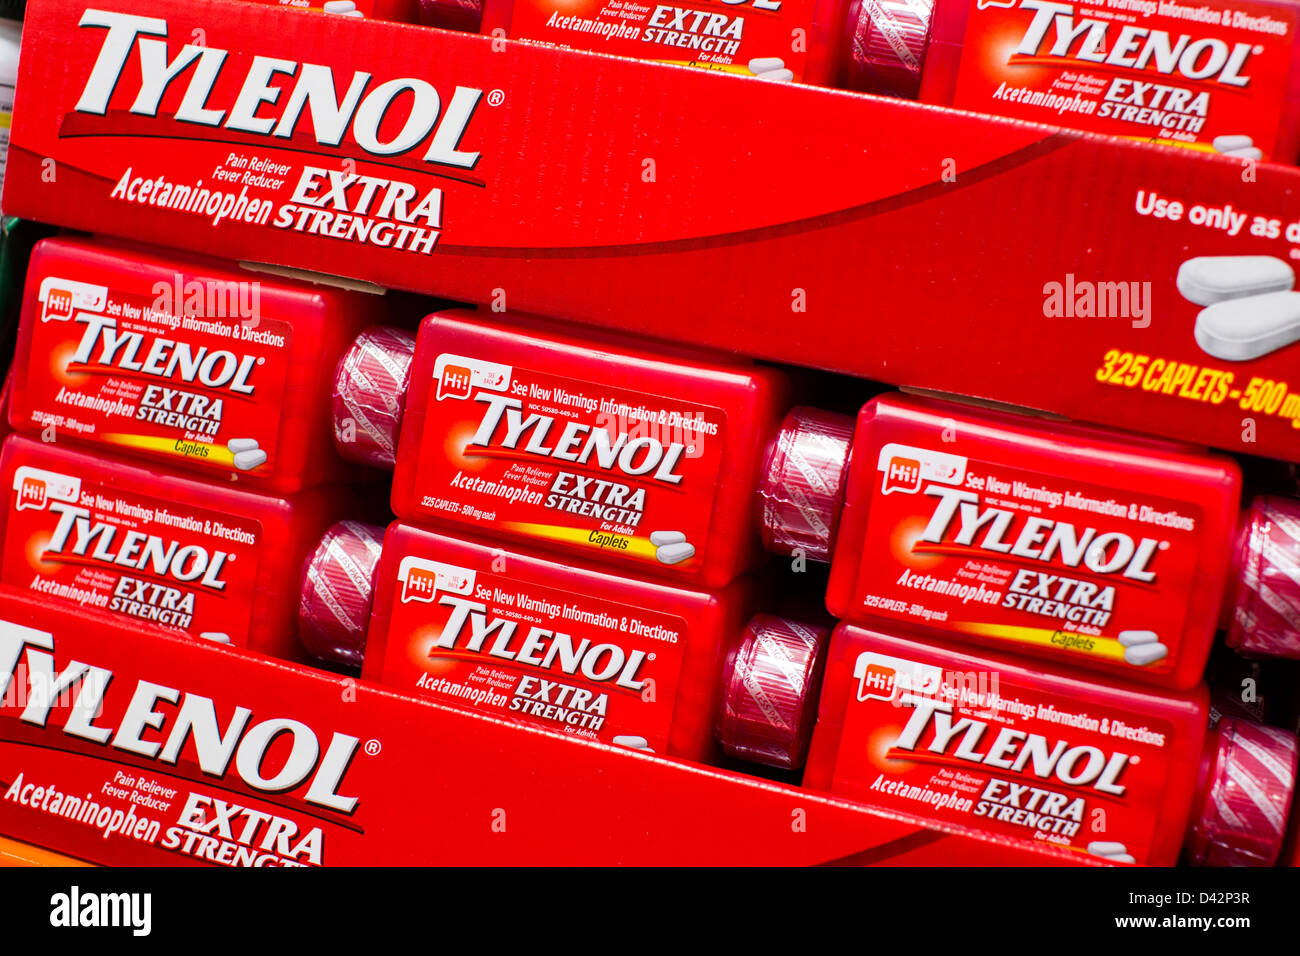 Tylenol extra strength sul visualizzatore in corrispondenza di un Costco Wholesale Club magazzino. Foto Stock